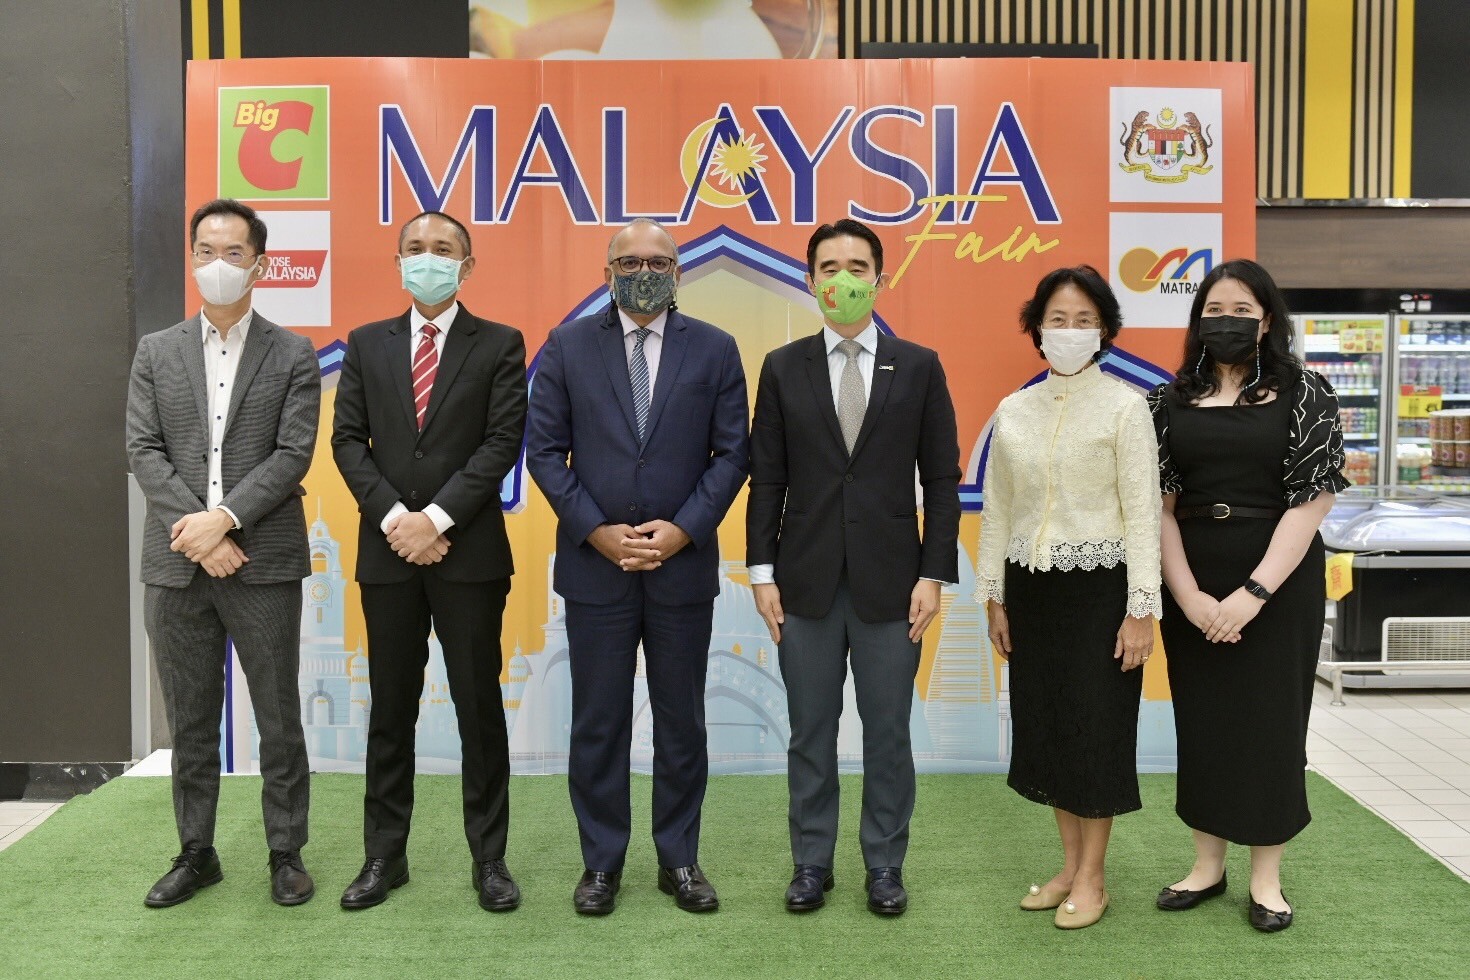 บิ๊กซี ร่วมกับ สถานเอกอัครราชทูตมาเลเซีย ประจำประเทศไทยจัดงาน "Malaysia Fair" จำหน่ายสินค้านำเข้าคุณภาพดี ยอดนิยมจากมาเลเซีย เข้าถึงลูกค้าได้ง่ายขึ้น ในราคาประหยัด คุ้มค่า